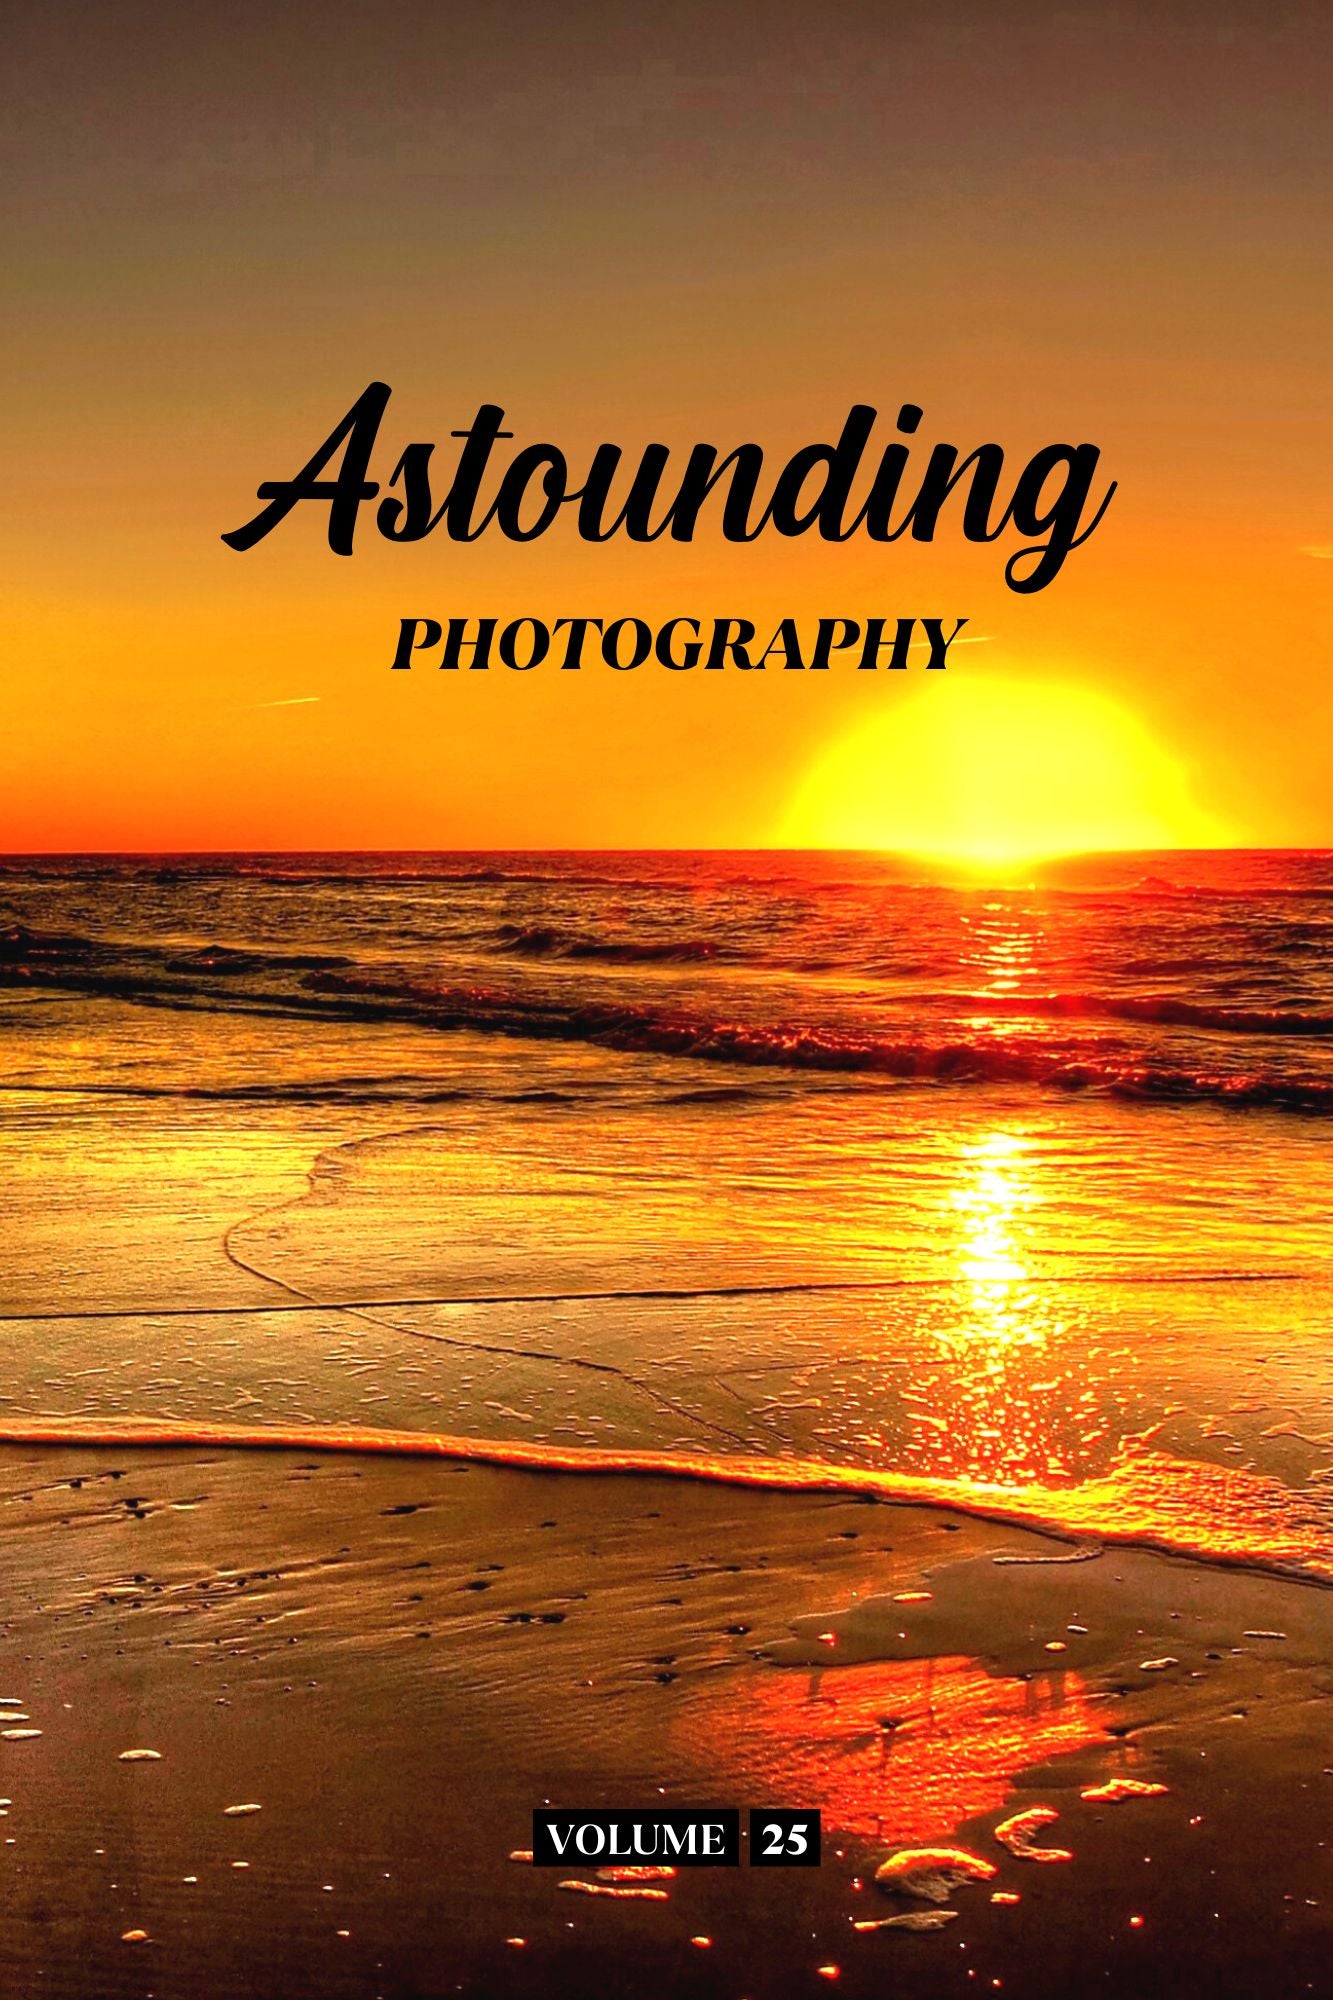 Astounding Photography Volume 25 (Physical Book Pre-Order)